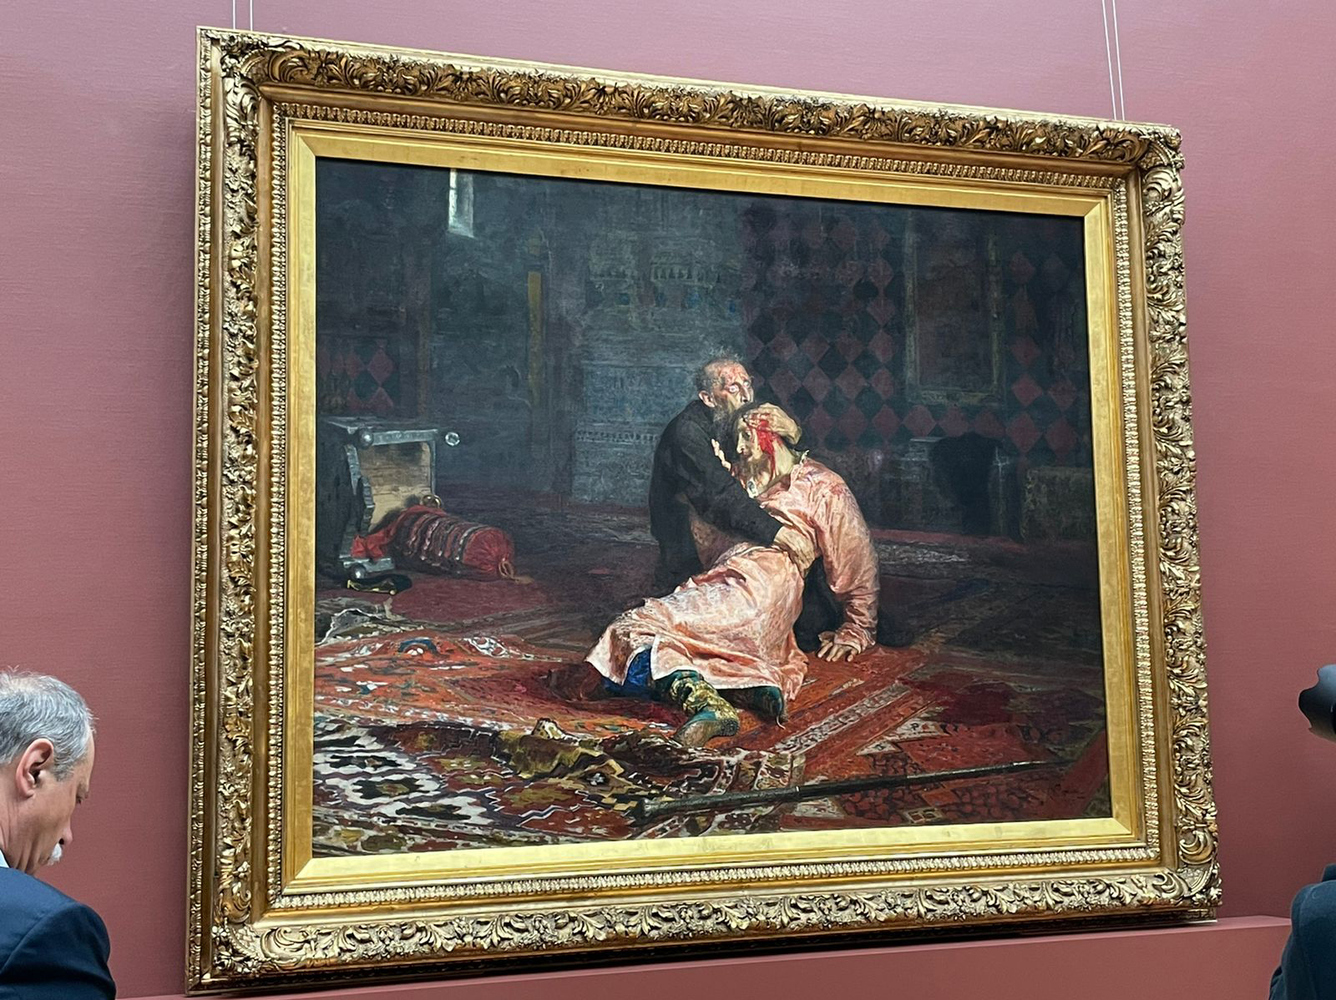 Реставраторы показали восстановленную картину Репина "Иван Грозный и сын его Иван"